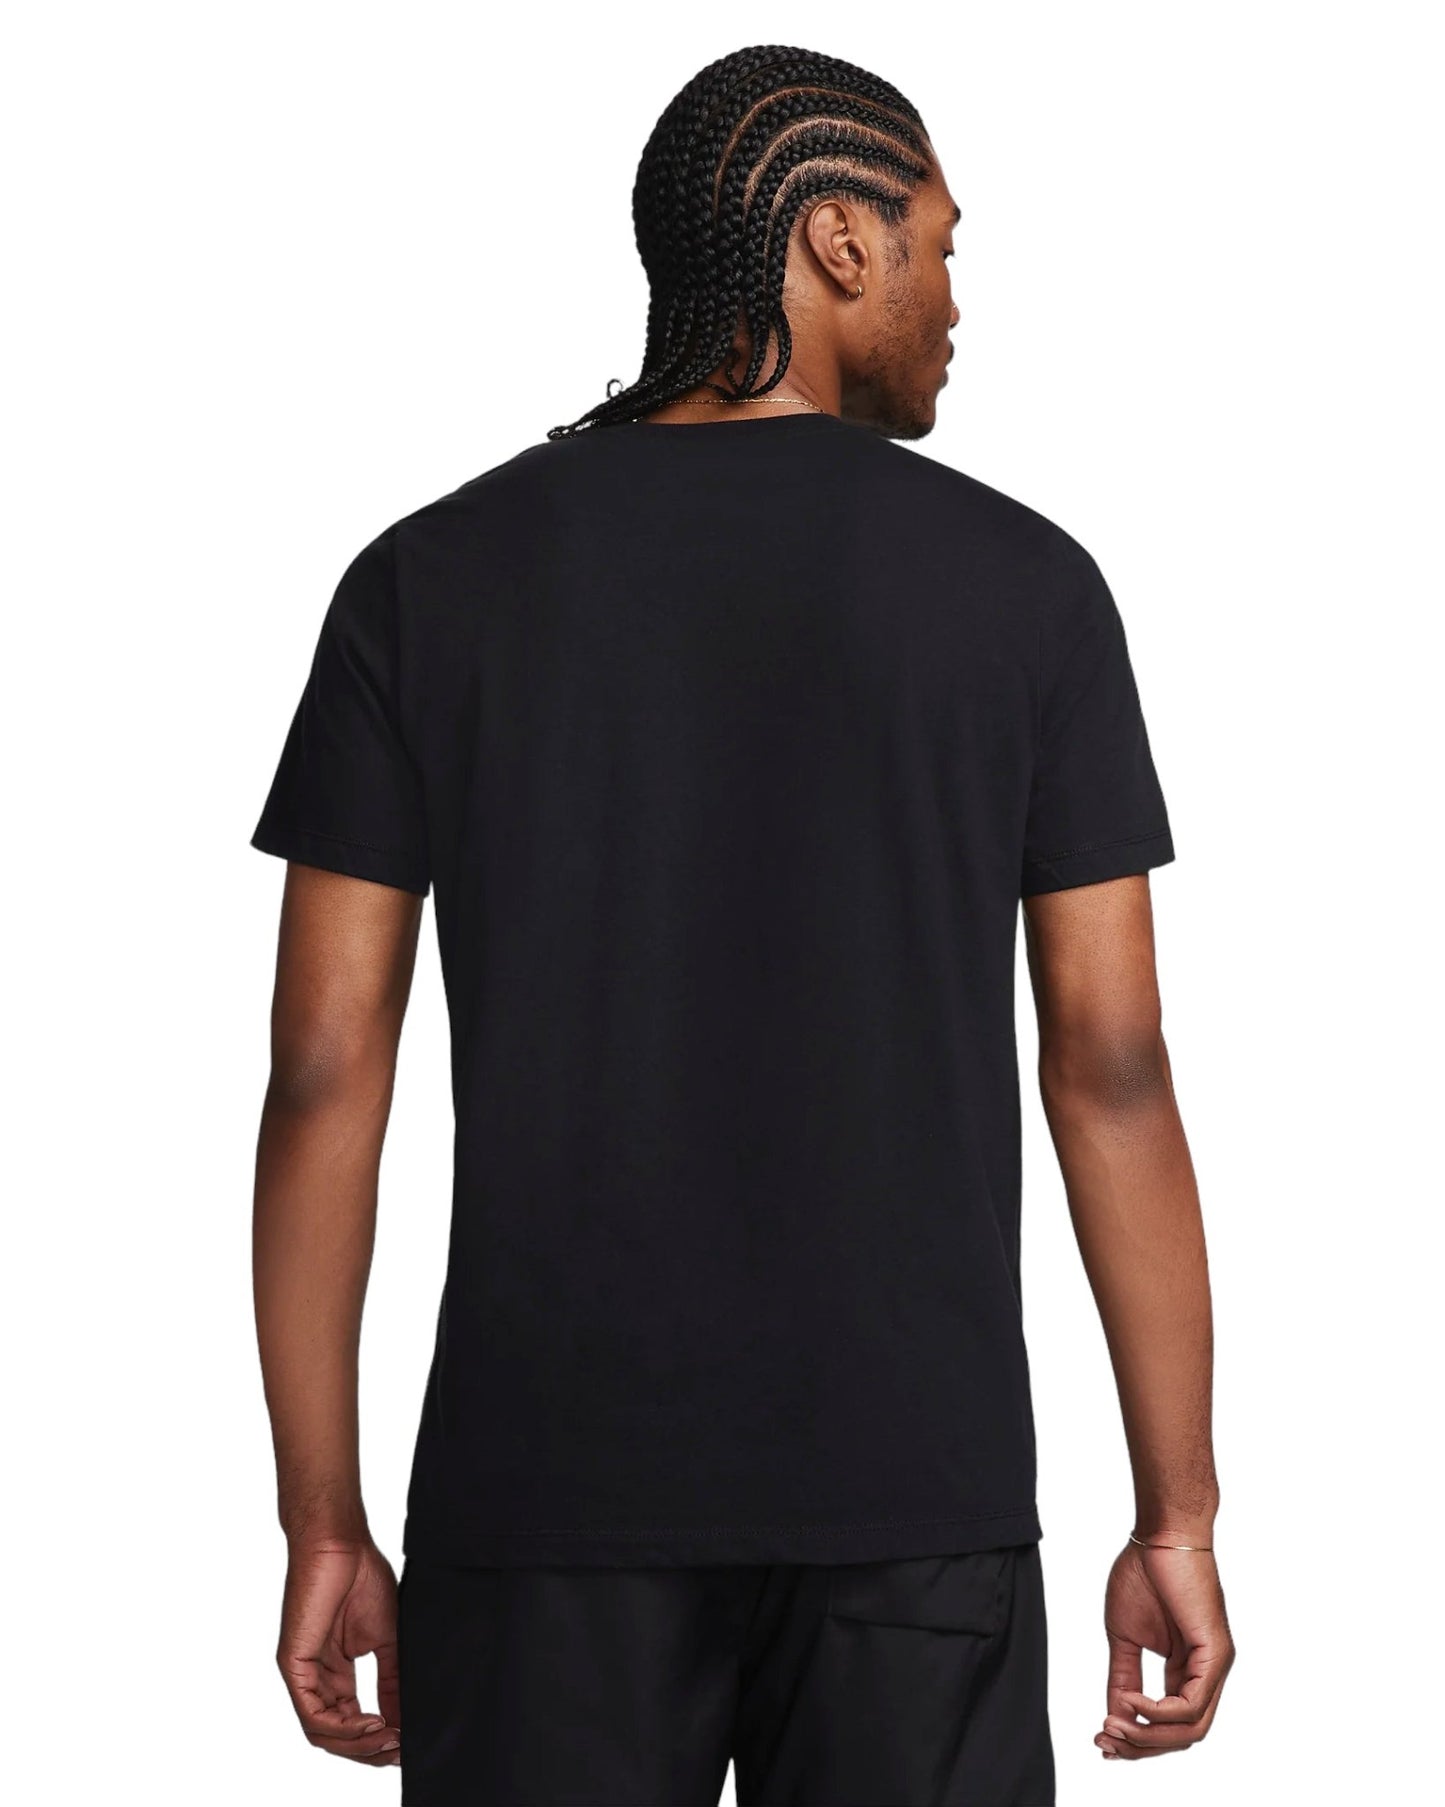 Fortnite x Nike Air Max Men's T-Shirt Black - Supra Sneakers